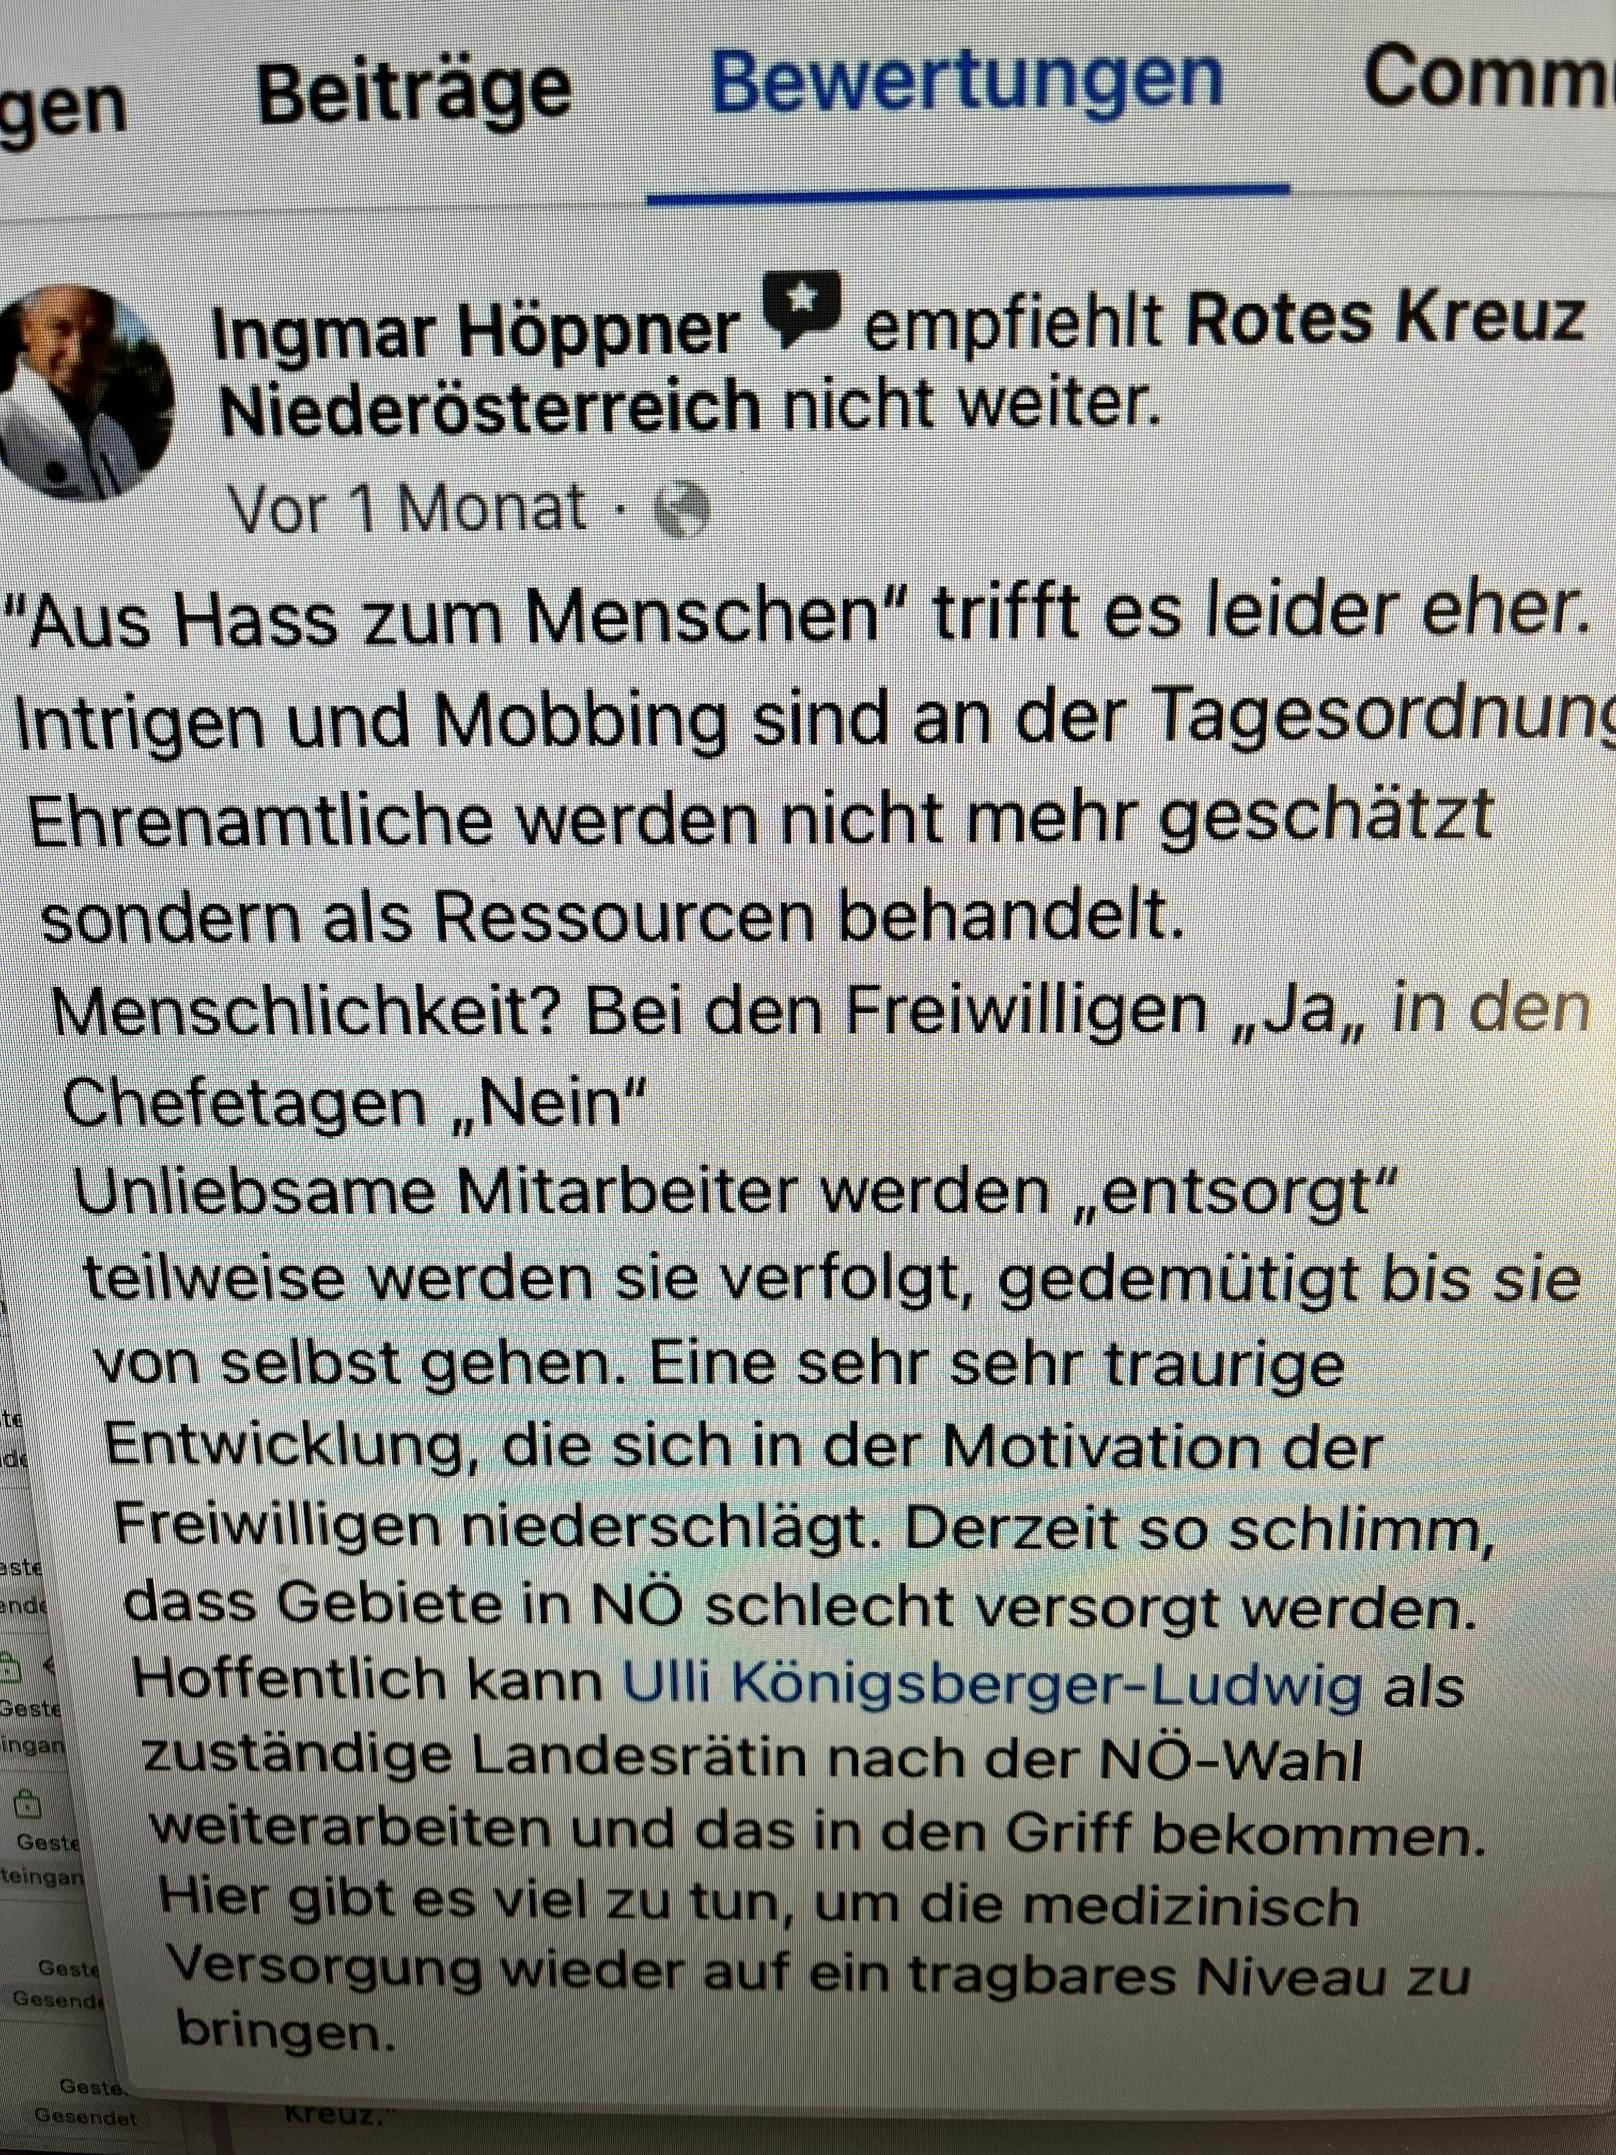 Die Bewertung von Ingmar Höppner auf der FB-Seite des Roten Kreuz NÖ